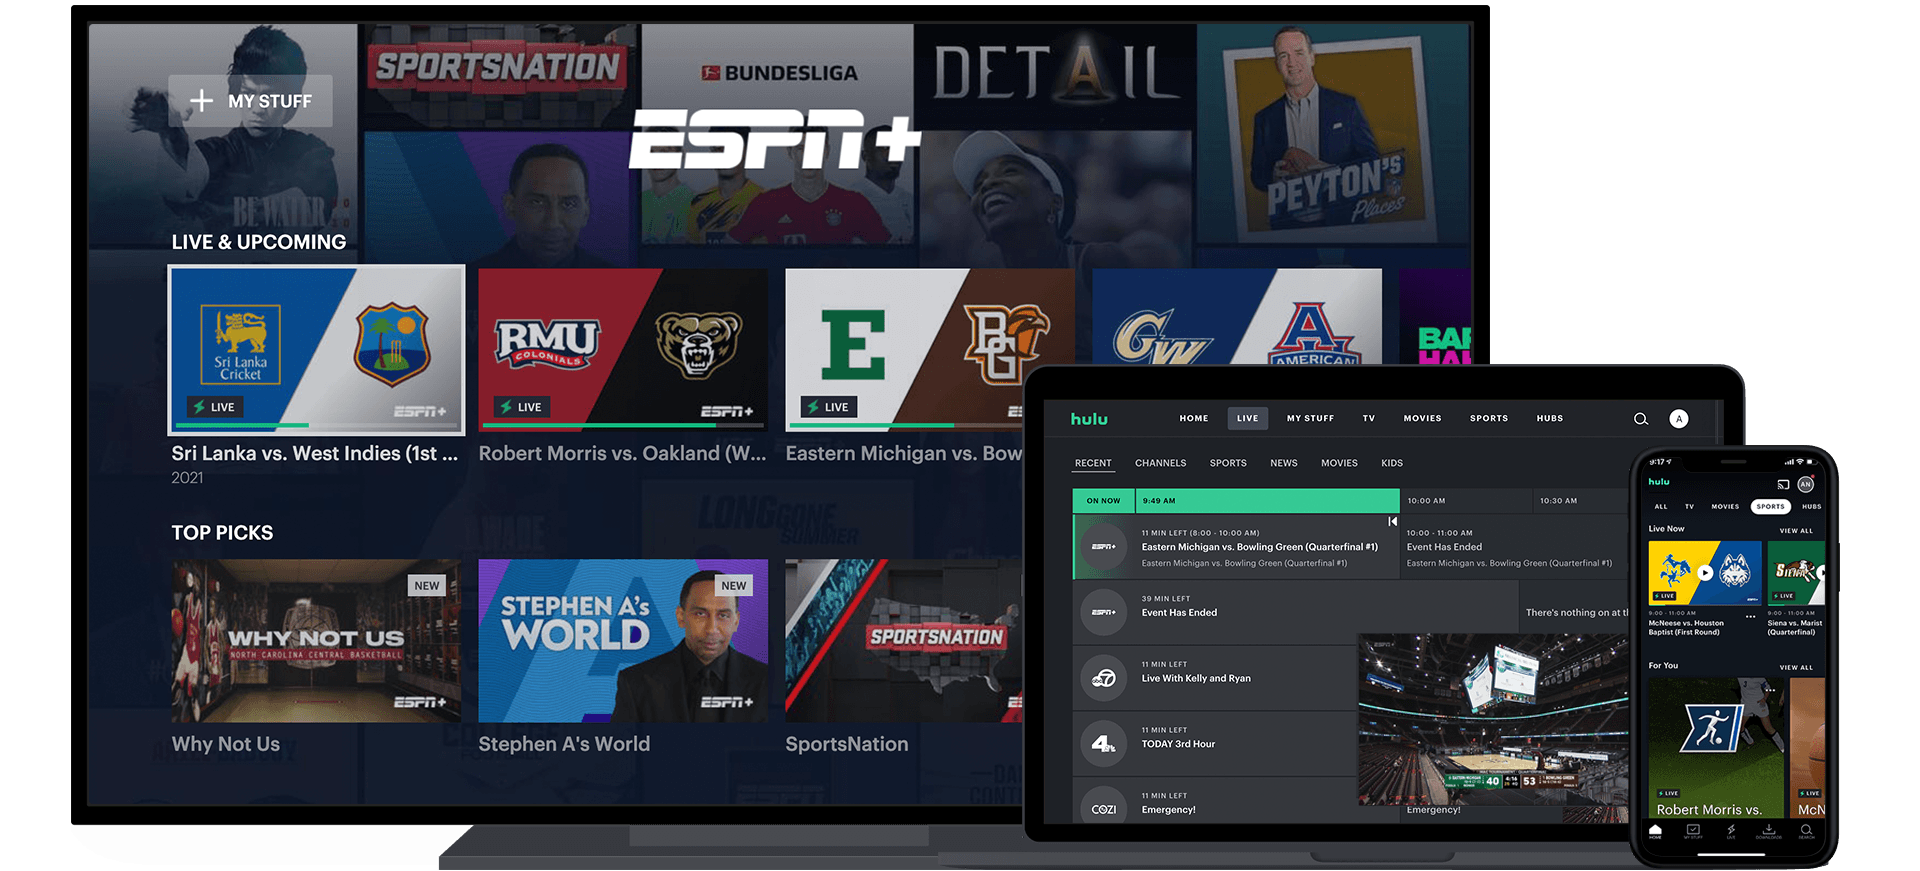 Stream ESPN+ Live Games and Original Shows - Watch ESPN